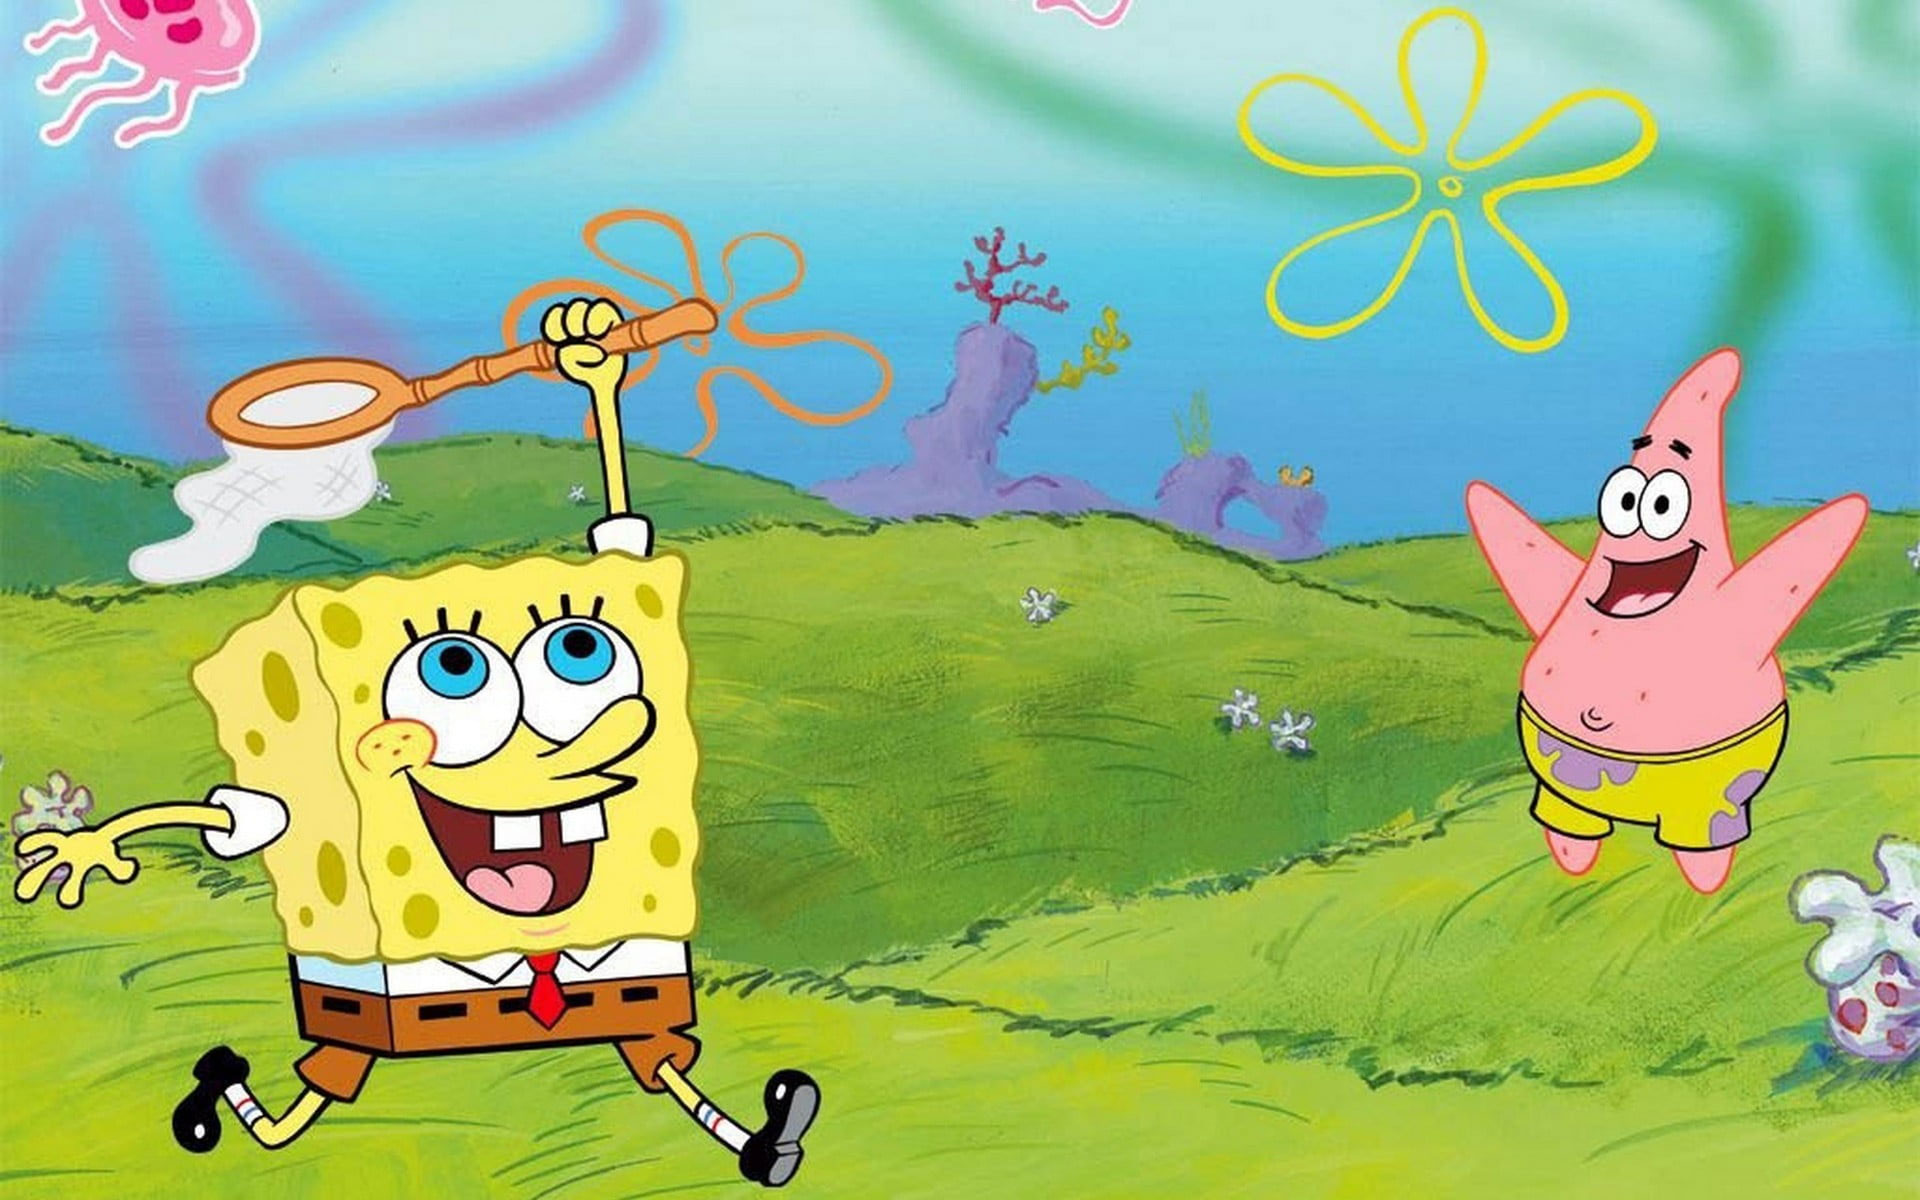 Spongebob Squarepants And Patrick Star Wallpaper